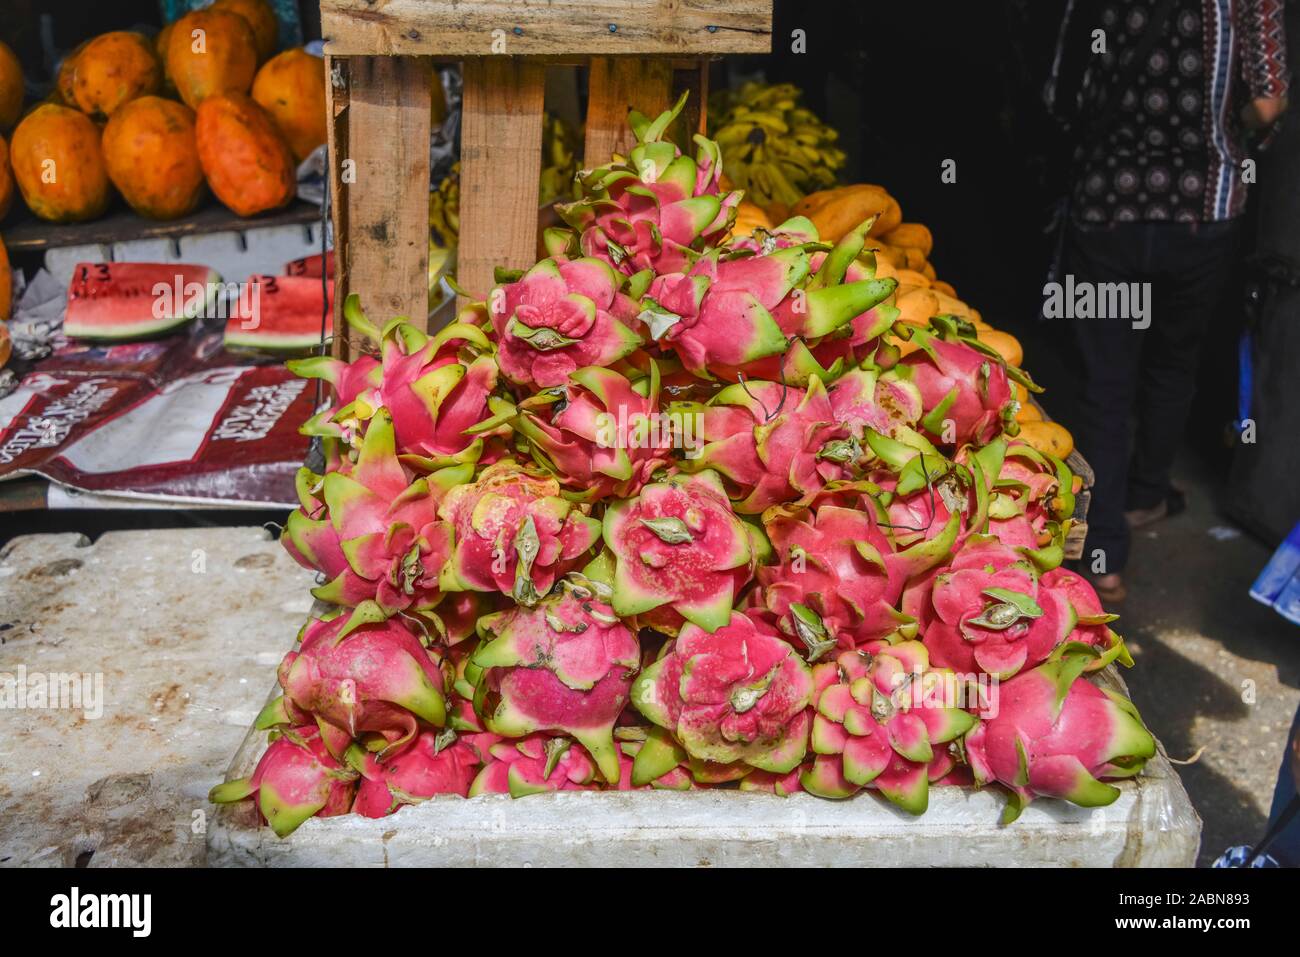 Drachenfrüchte, Marktstand, 'Mercado Lucas de Galvez', Merida, Yucatan, Mexiko Stock Photo